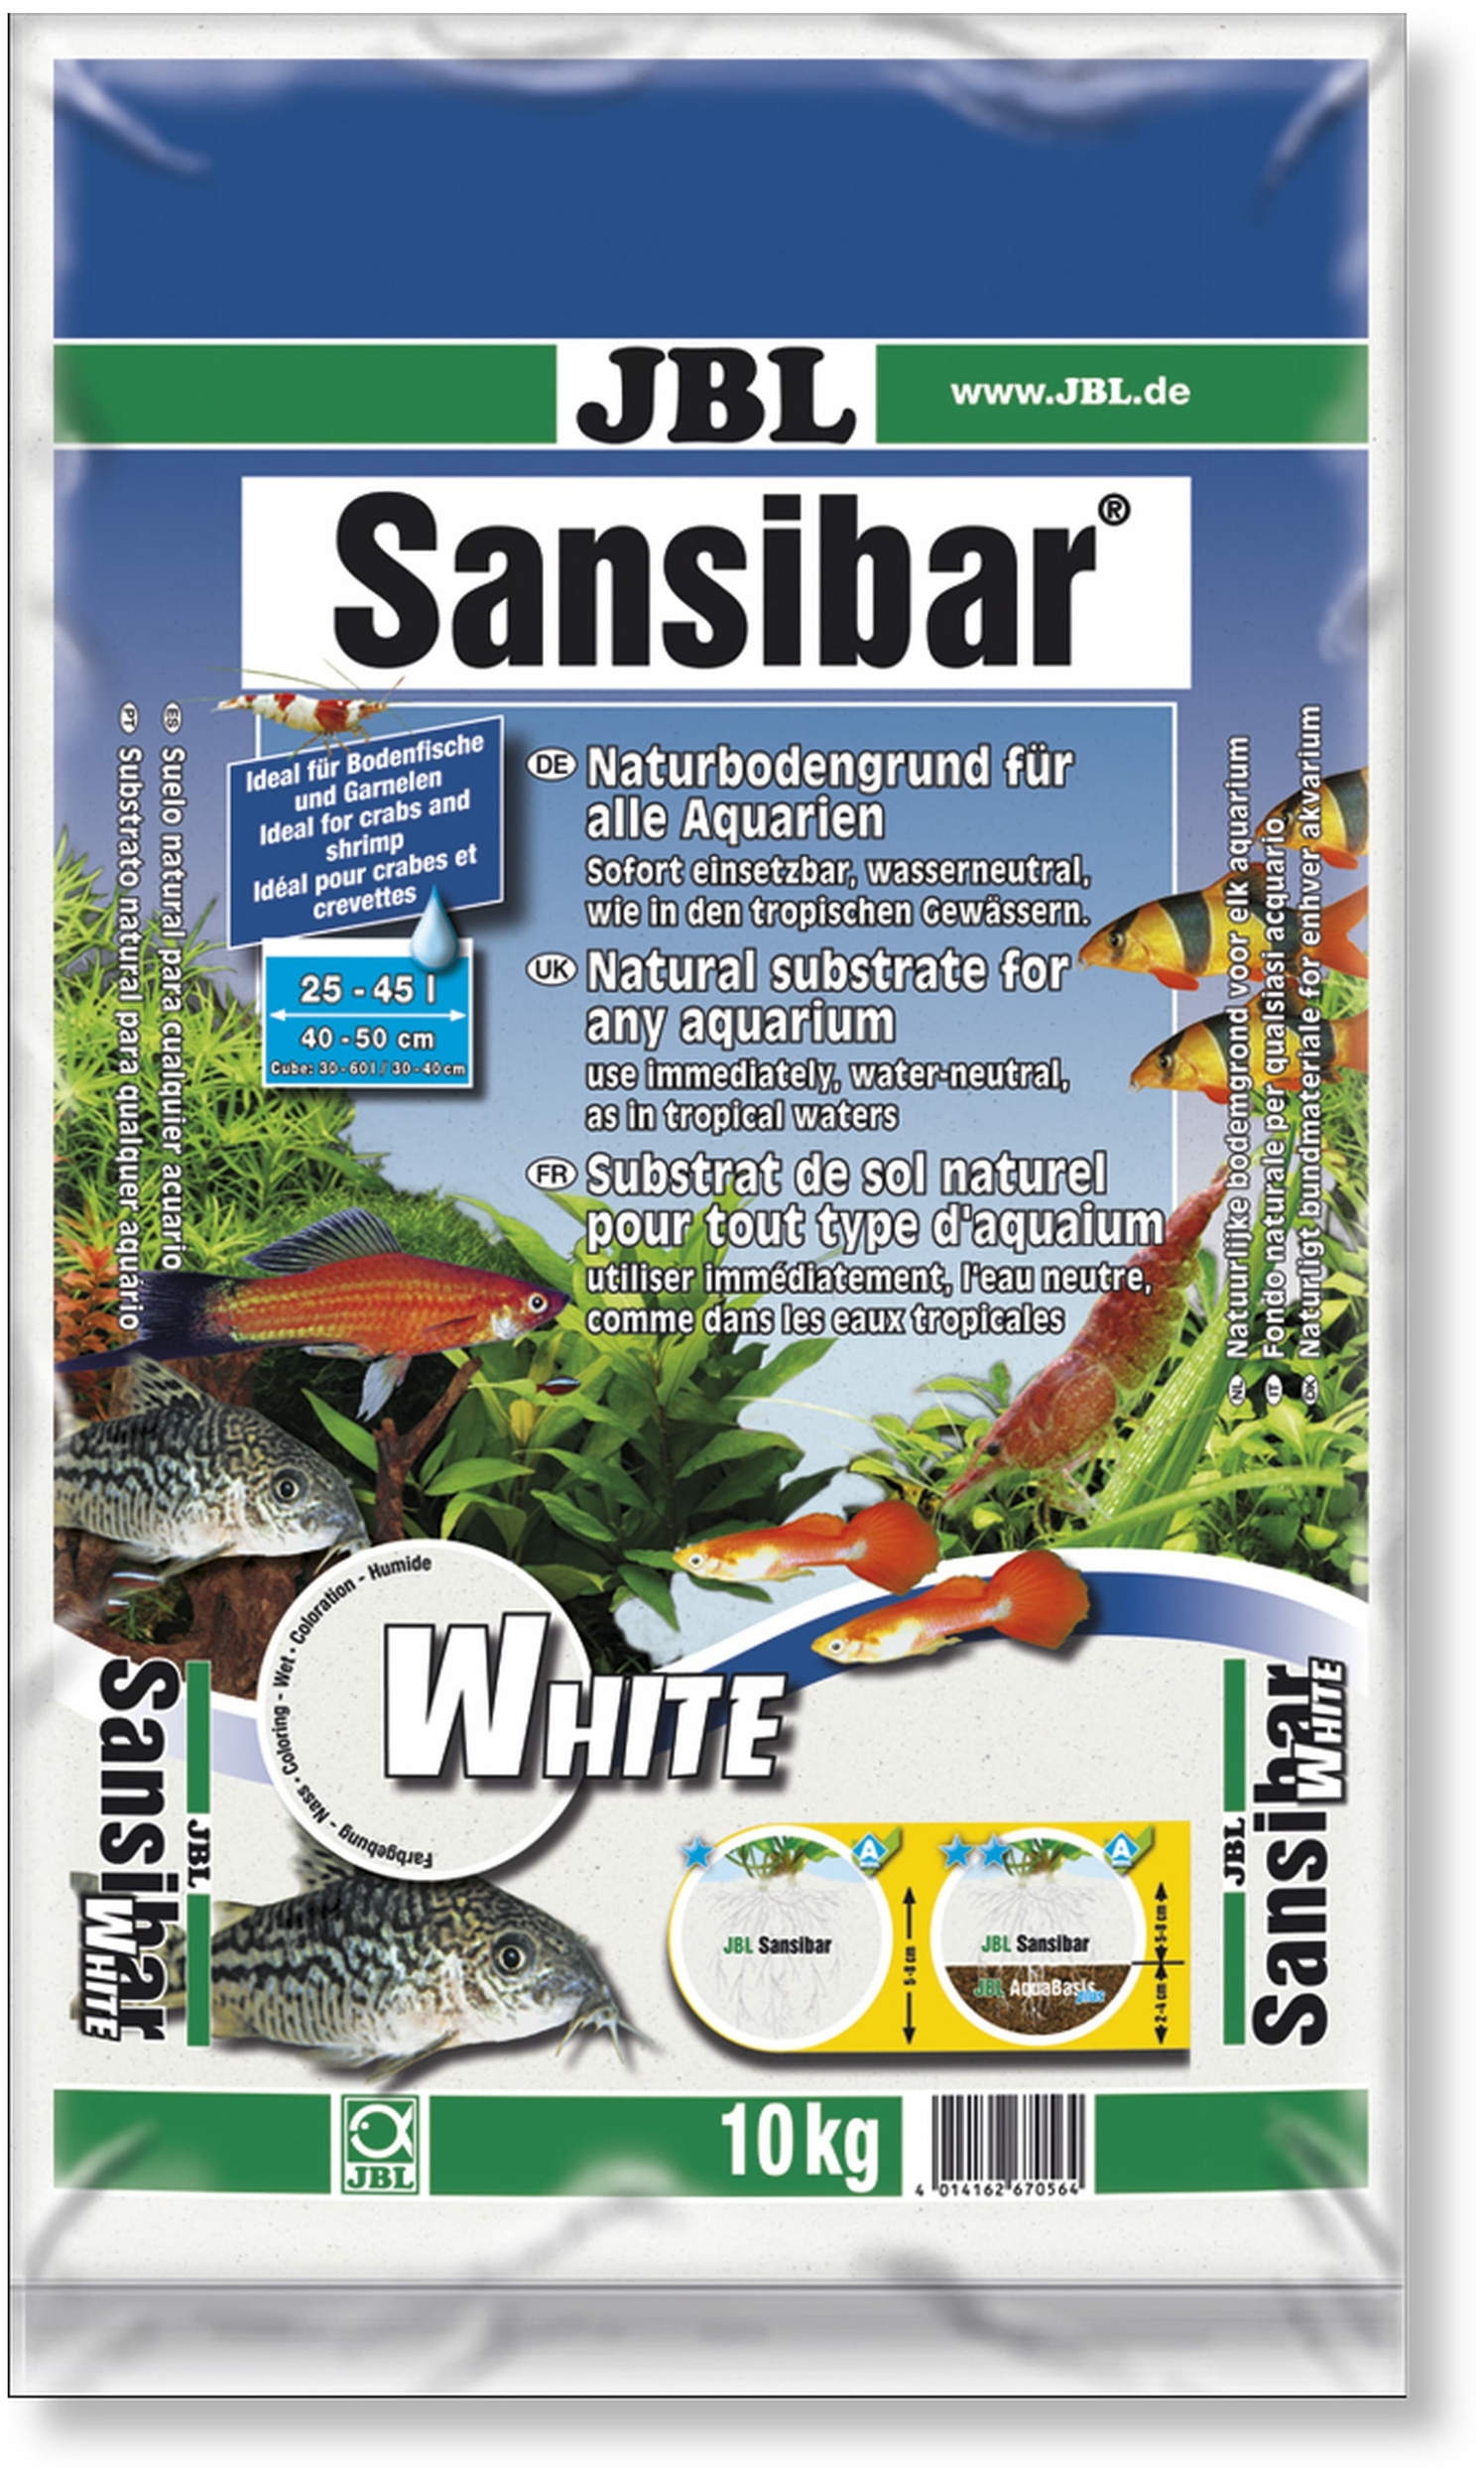 jbl-sansibar-white-10-kg-substrat-de-sol-naturel-fin-couleur-blanc-0-2-a-0-6-mm-pour-aquarium-d-eau-douce-min